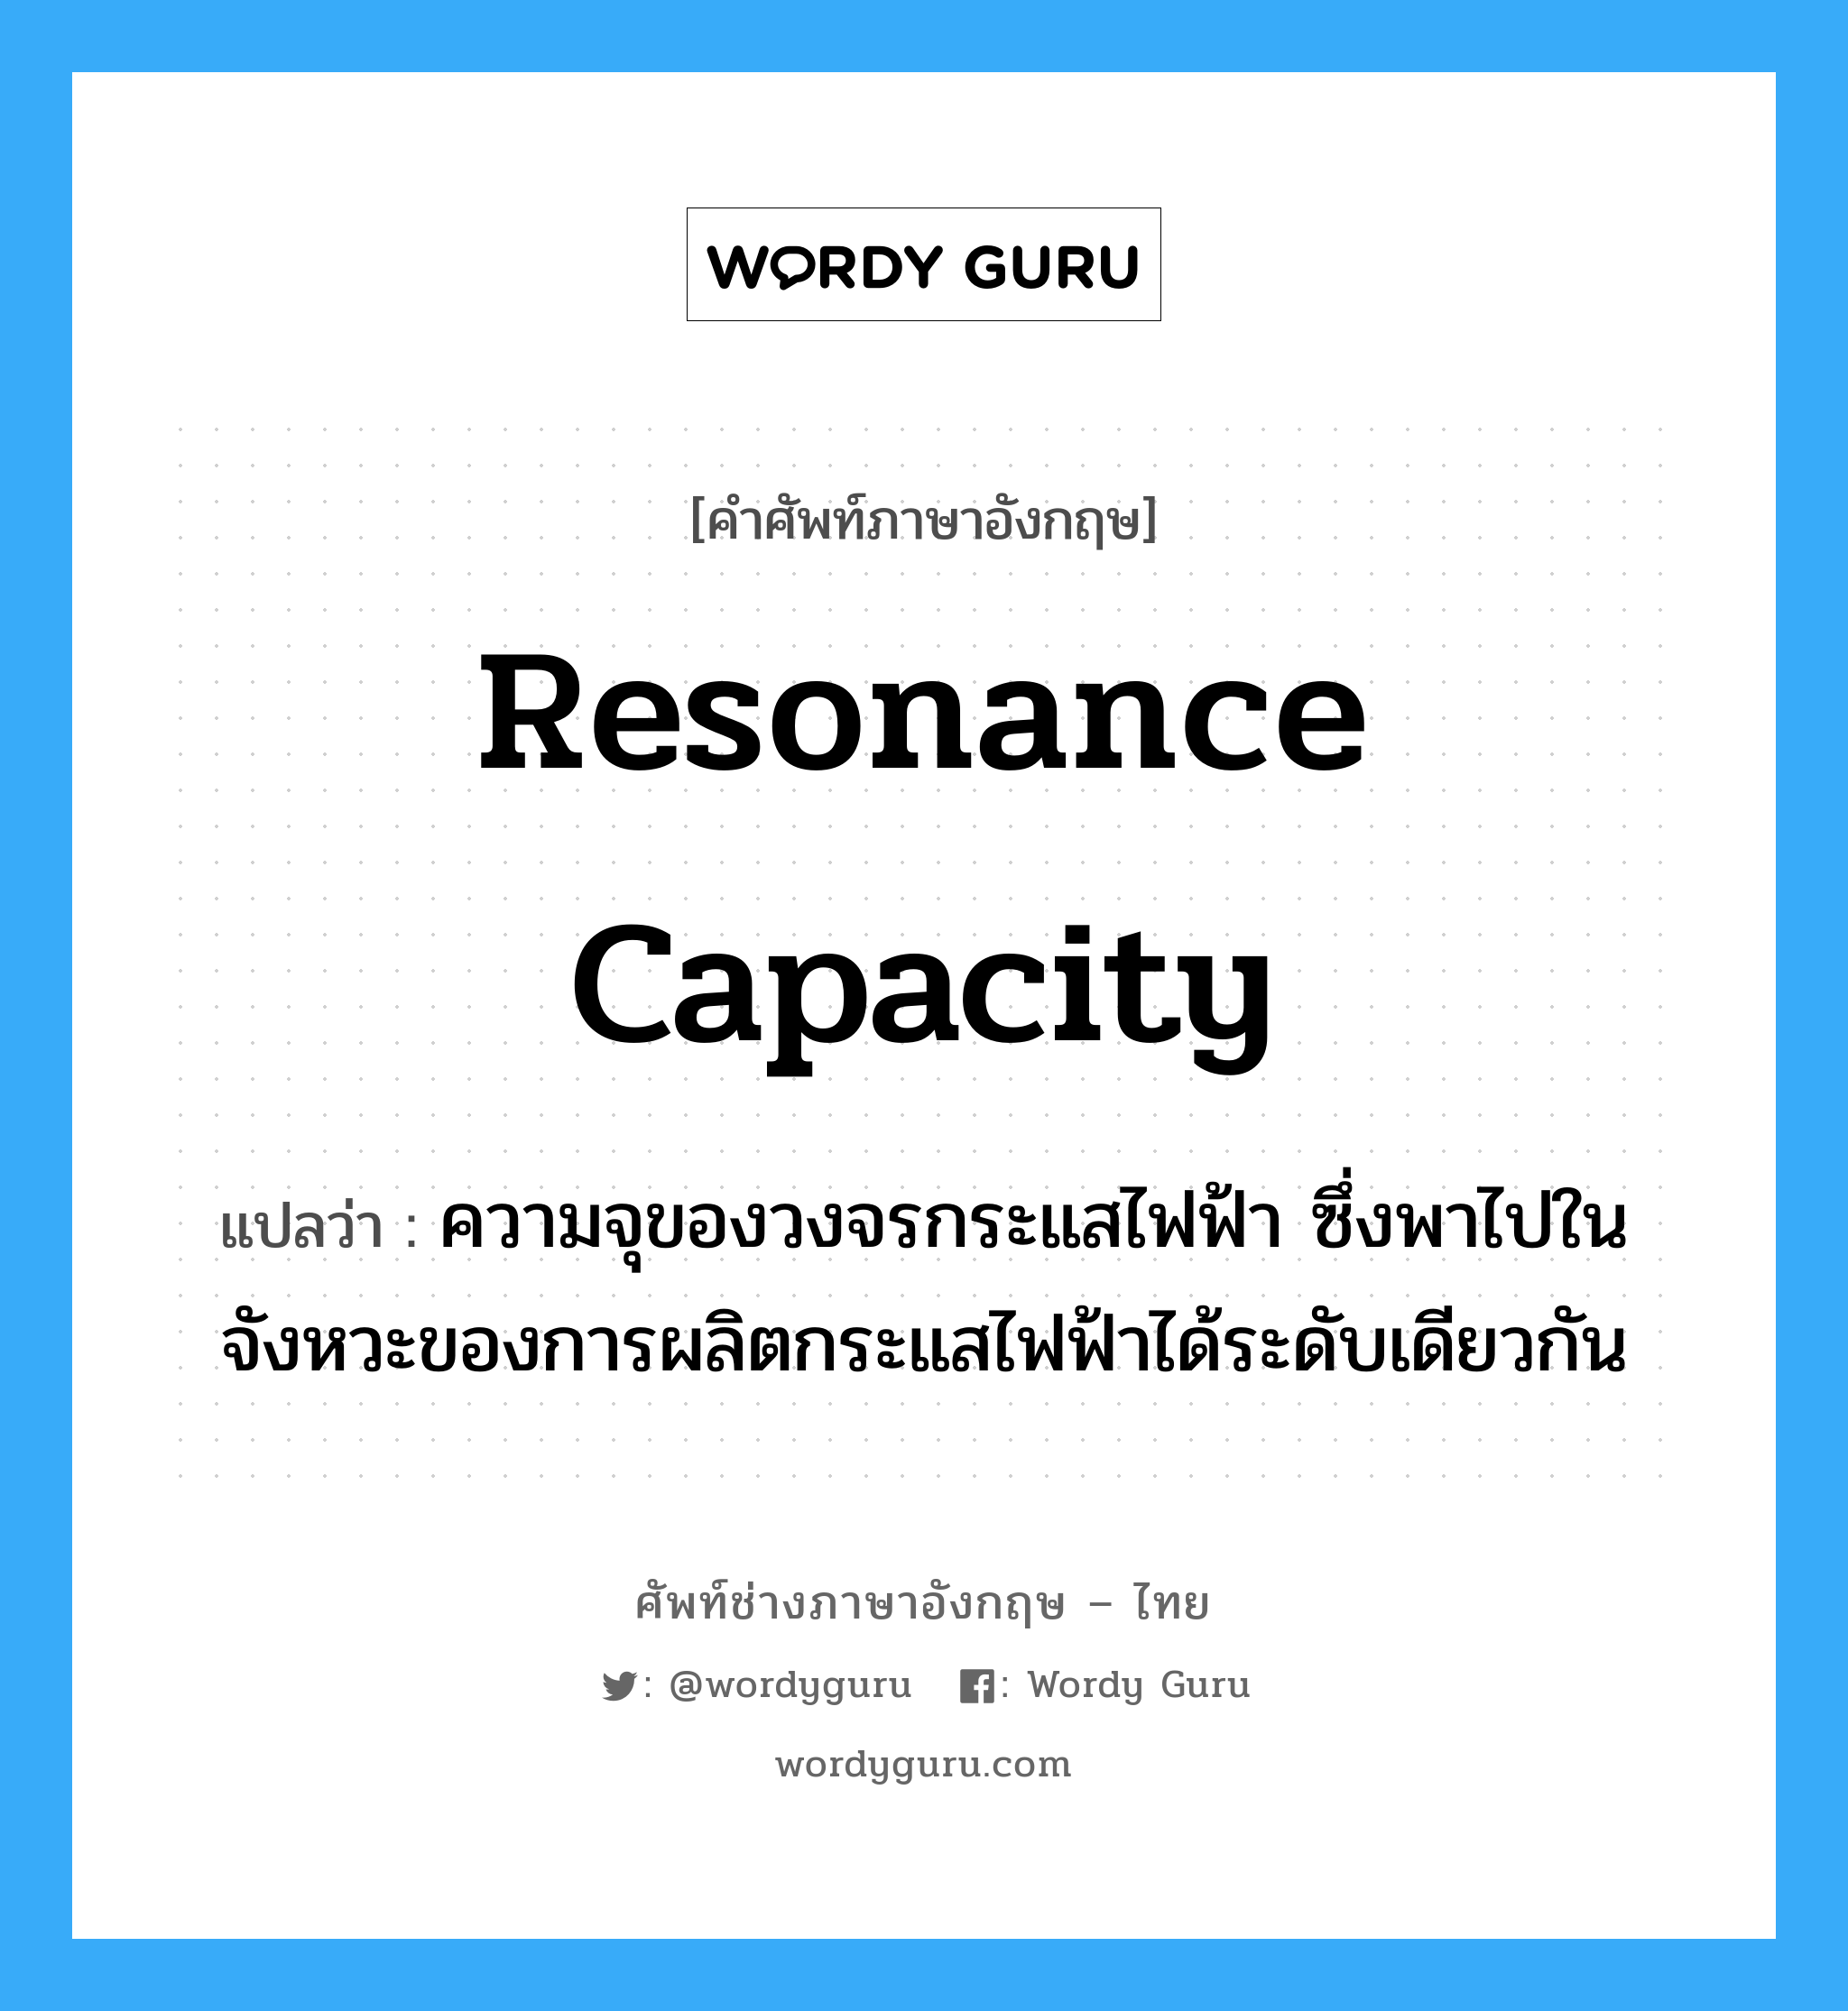 resonance capacity แปลว่า?, คำศัพท์ช่างภาษาอังกฤษ - ไทย resonance capacity คำศัพท์ภาษาอังกฤษ resonance capacity แปลว่า ความจุของวงจรกระแสไฟฟ้า ซึ่งพาไปในจังหวะของการผลิตกระแสไฟฟ้าได้ระดับเดียวกัน